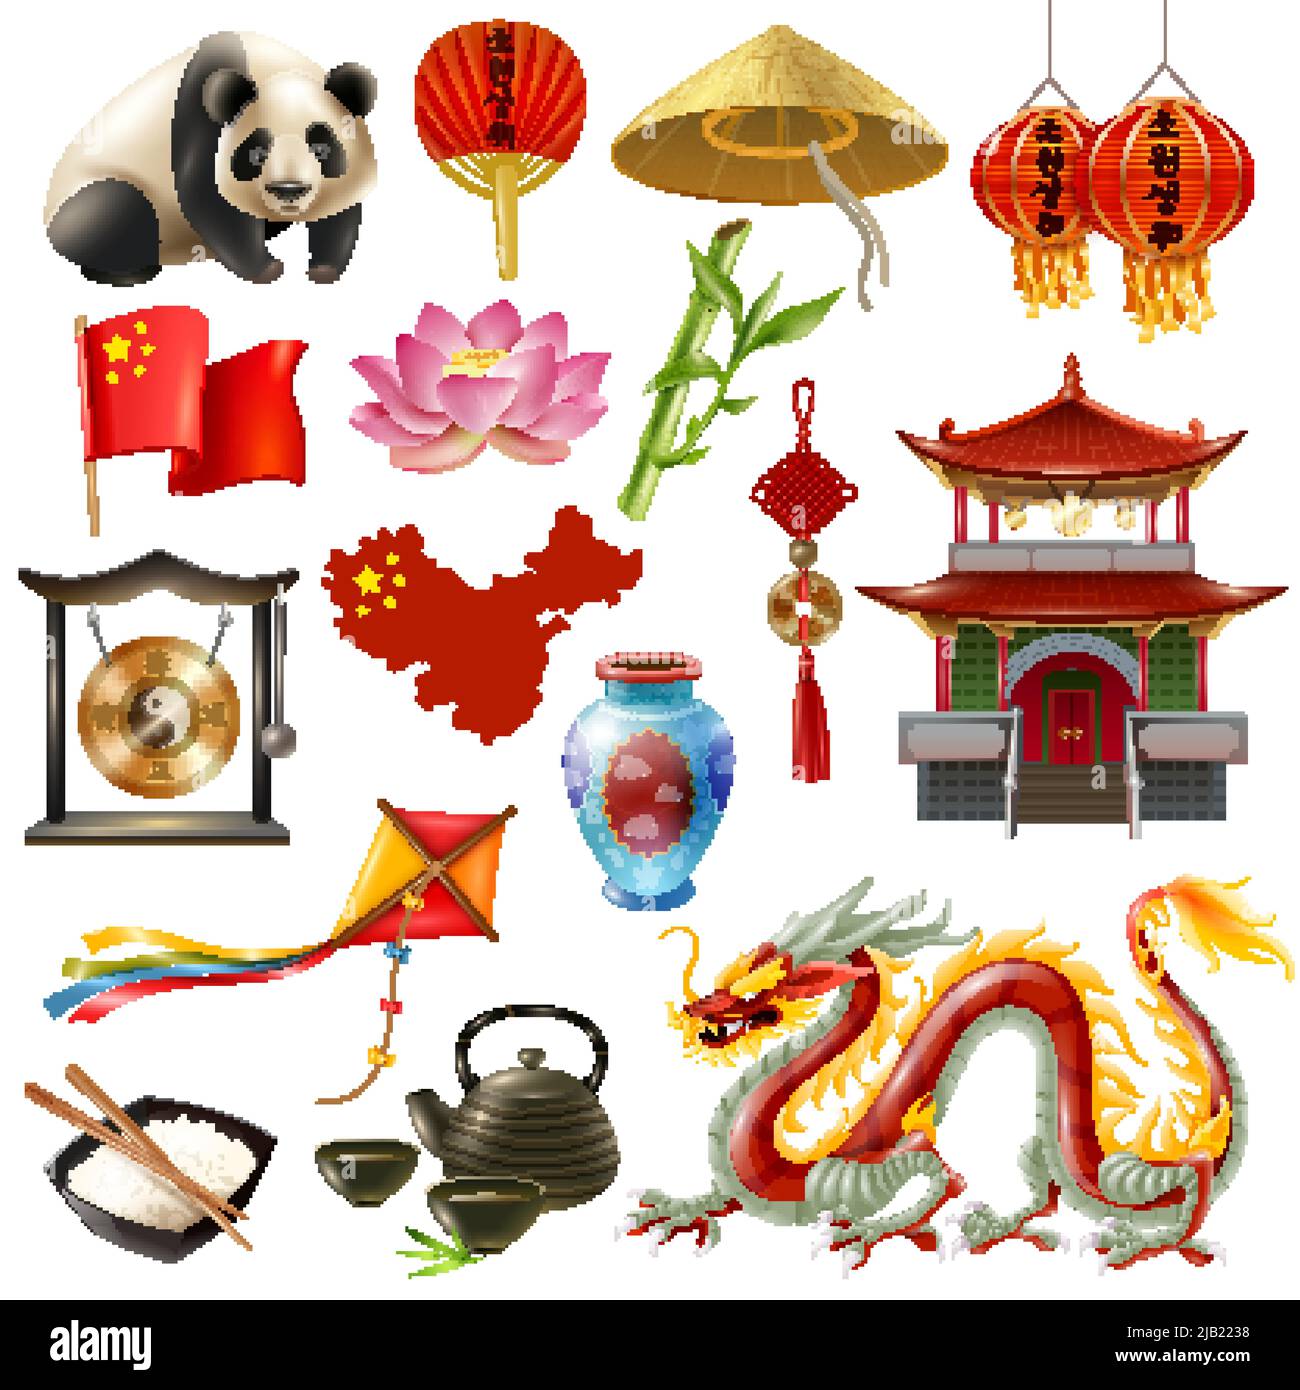 Farbige und isolierte china Reise-Symbol mit den beliebtesten Attraktionen und Tiere Vektor-Illustration gesetzt Stock Vektor